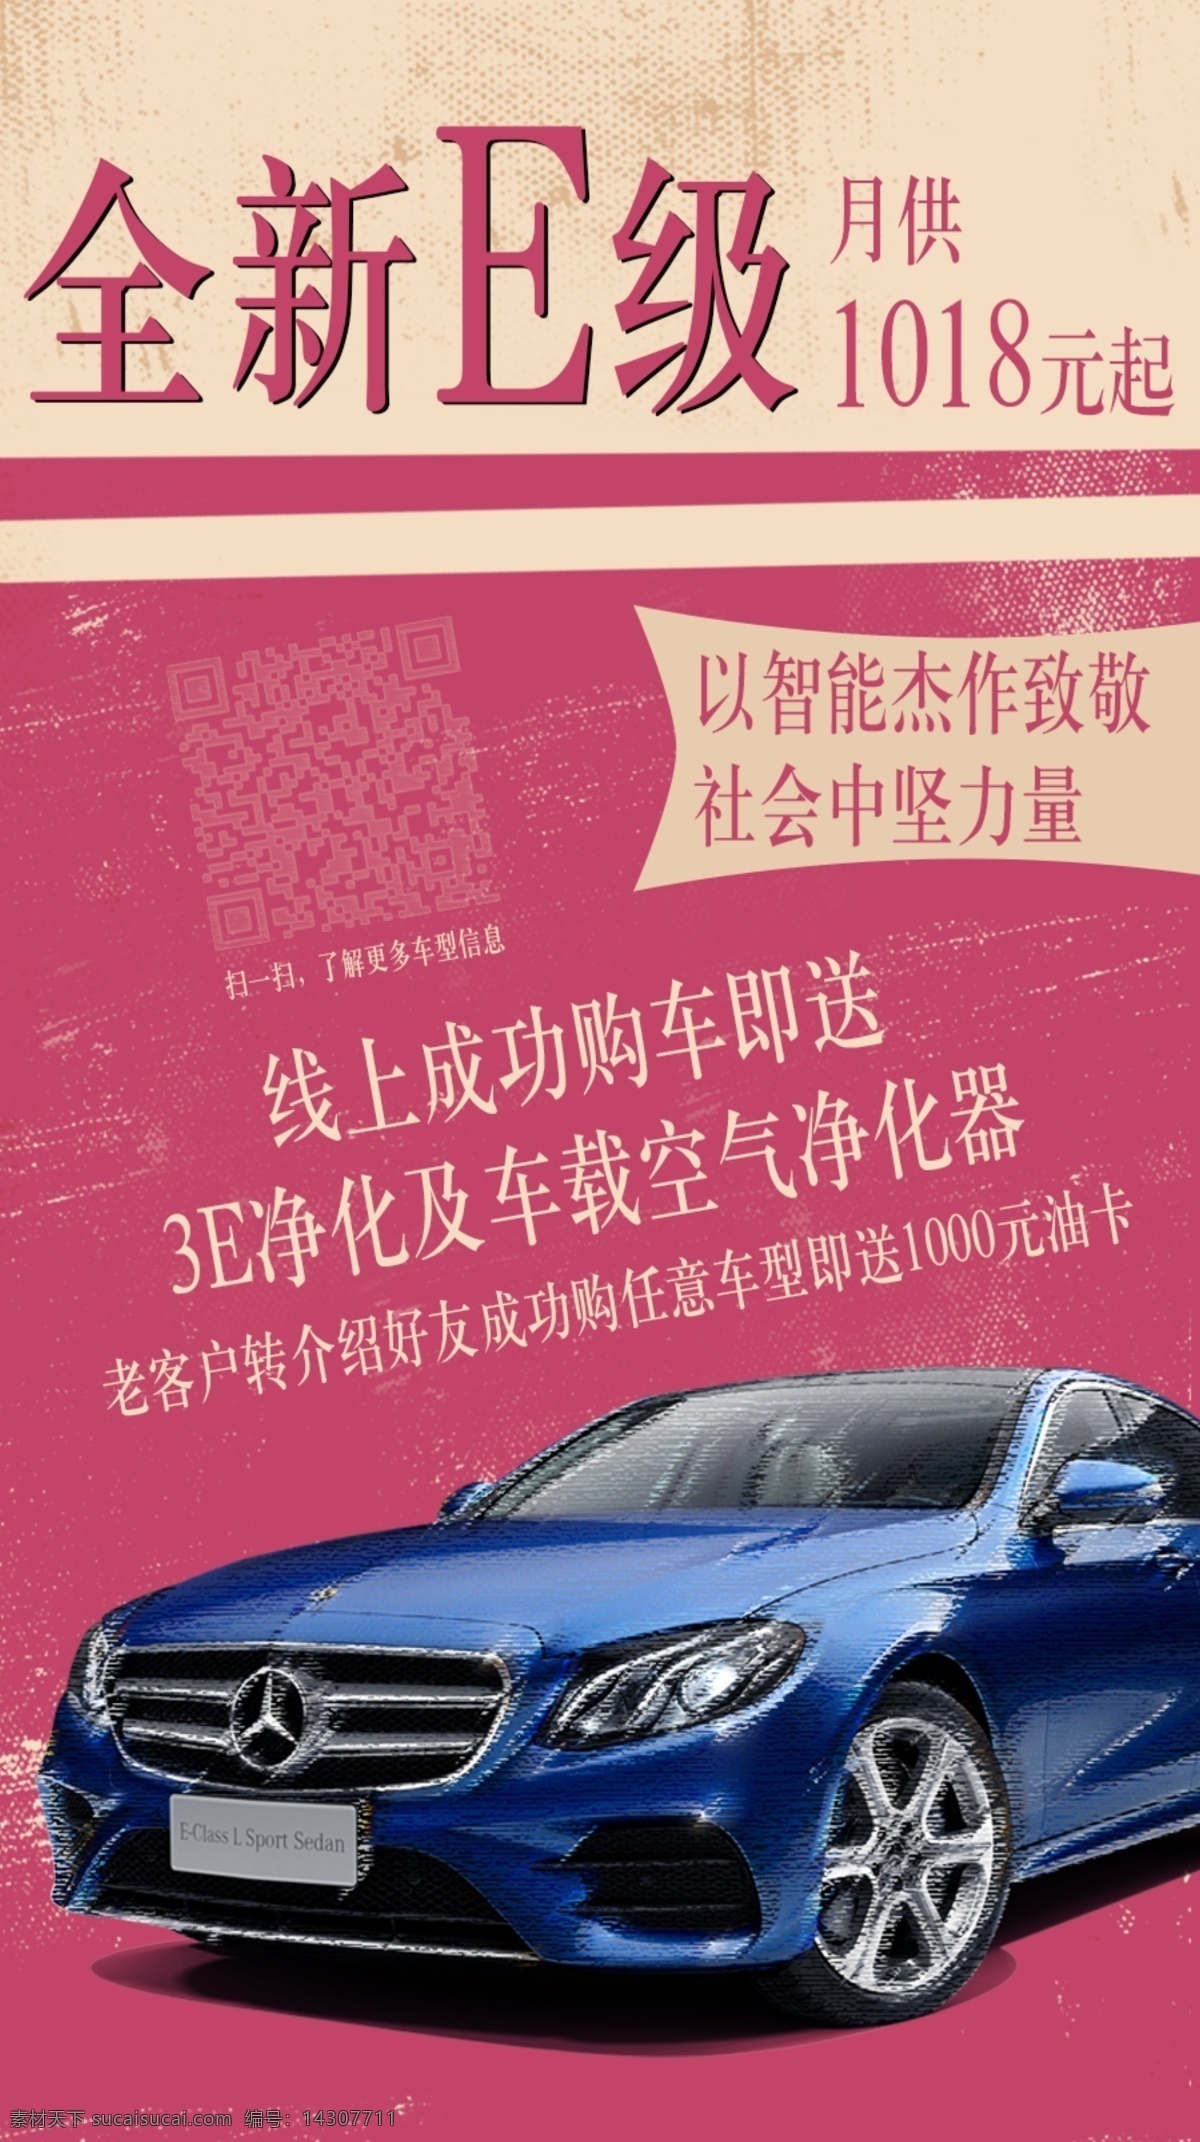 奔驰e级 全新e级 金融信息 benz 汽车 海报 宣传图 分层